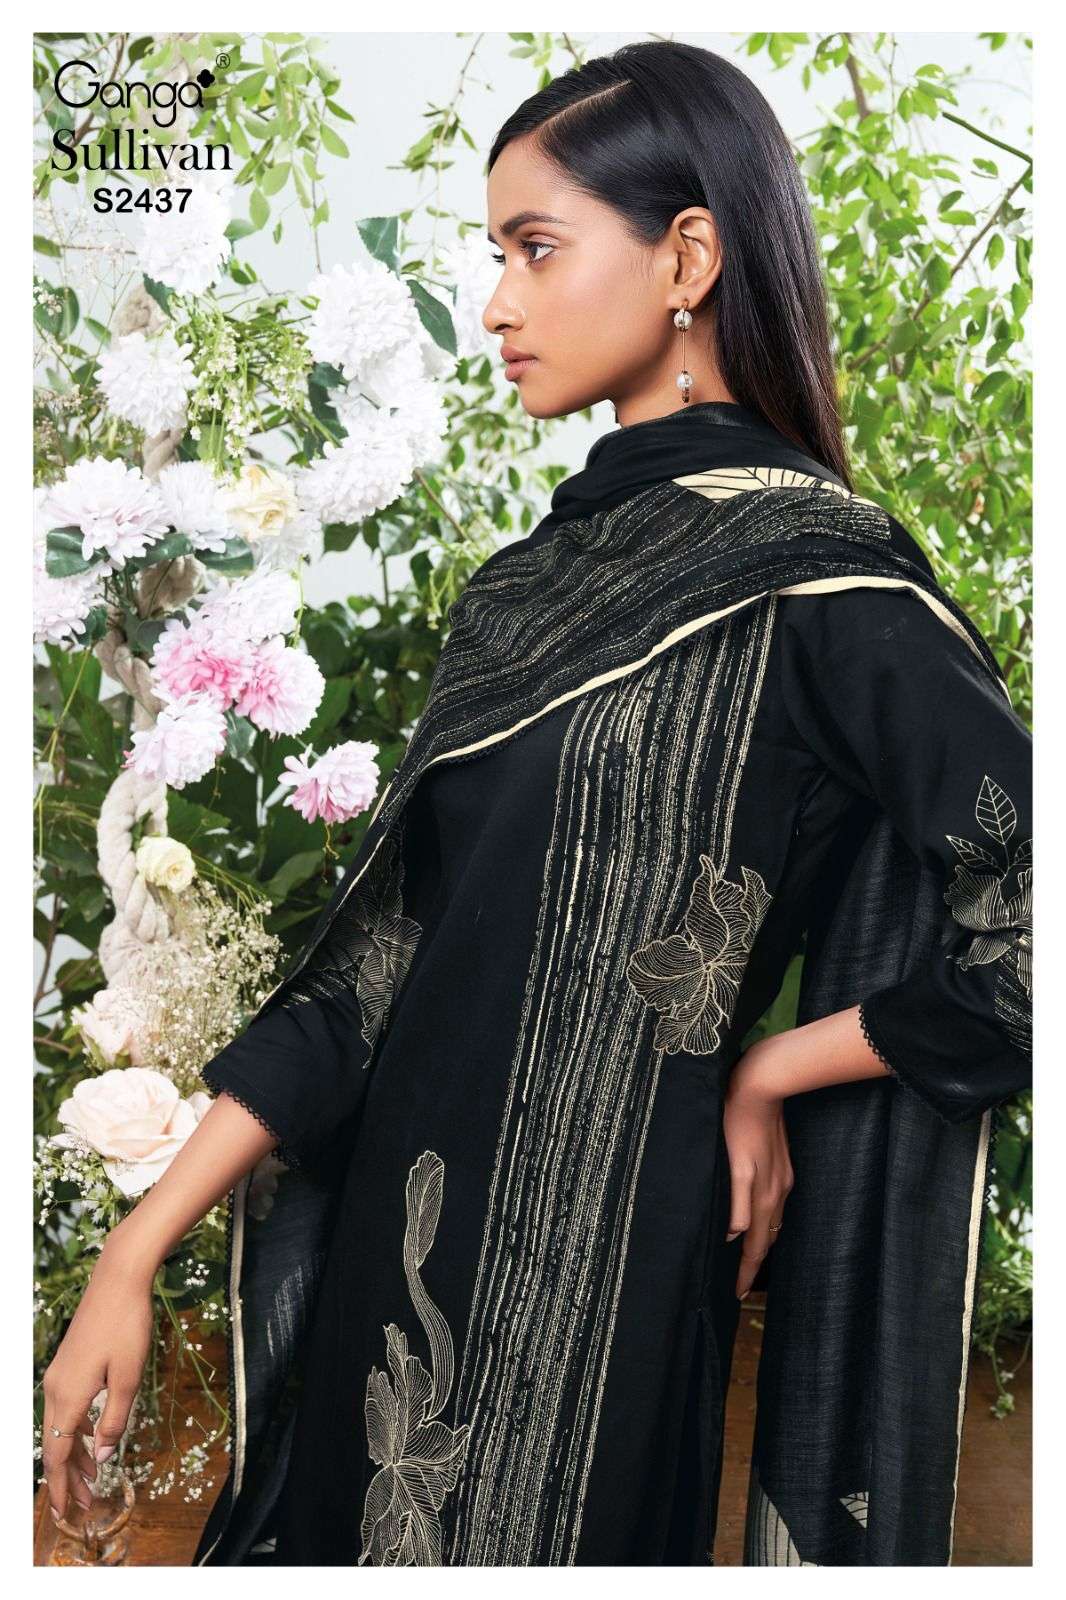 Ganga Sullivan 2437 Premium Cotton Silk Ladies Suit Catalog Exporters